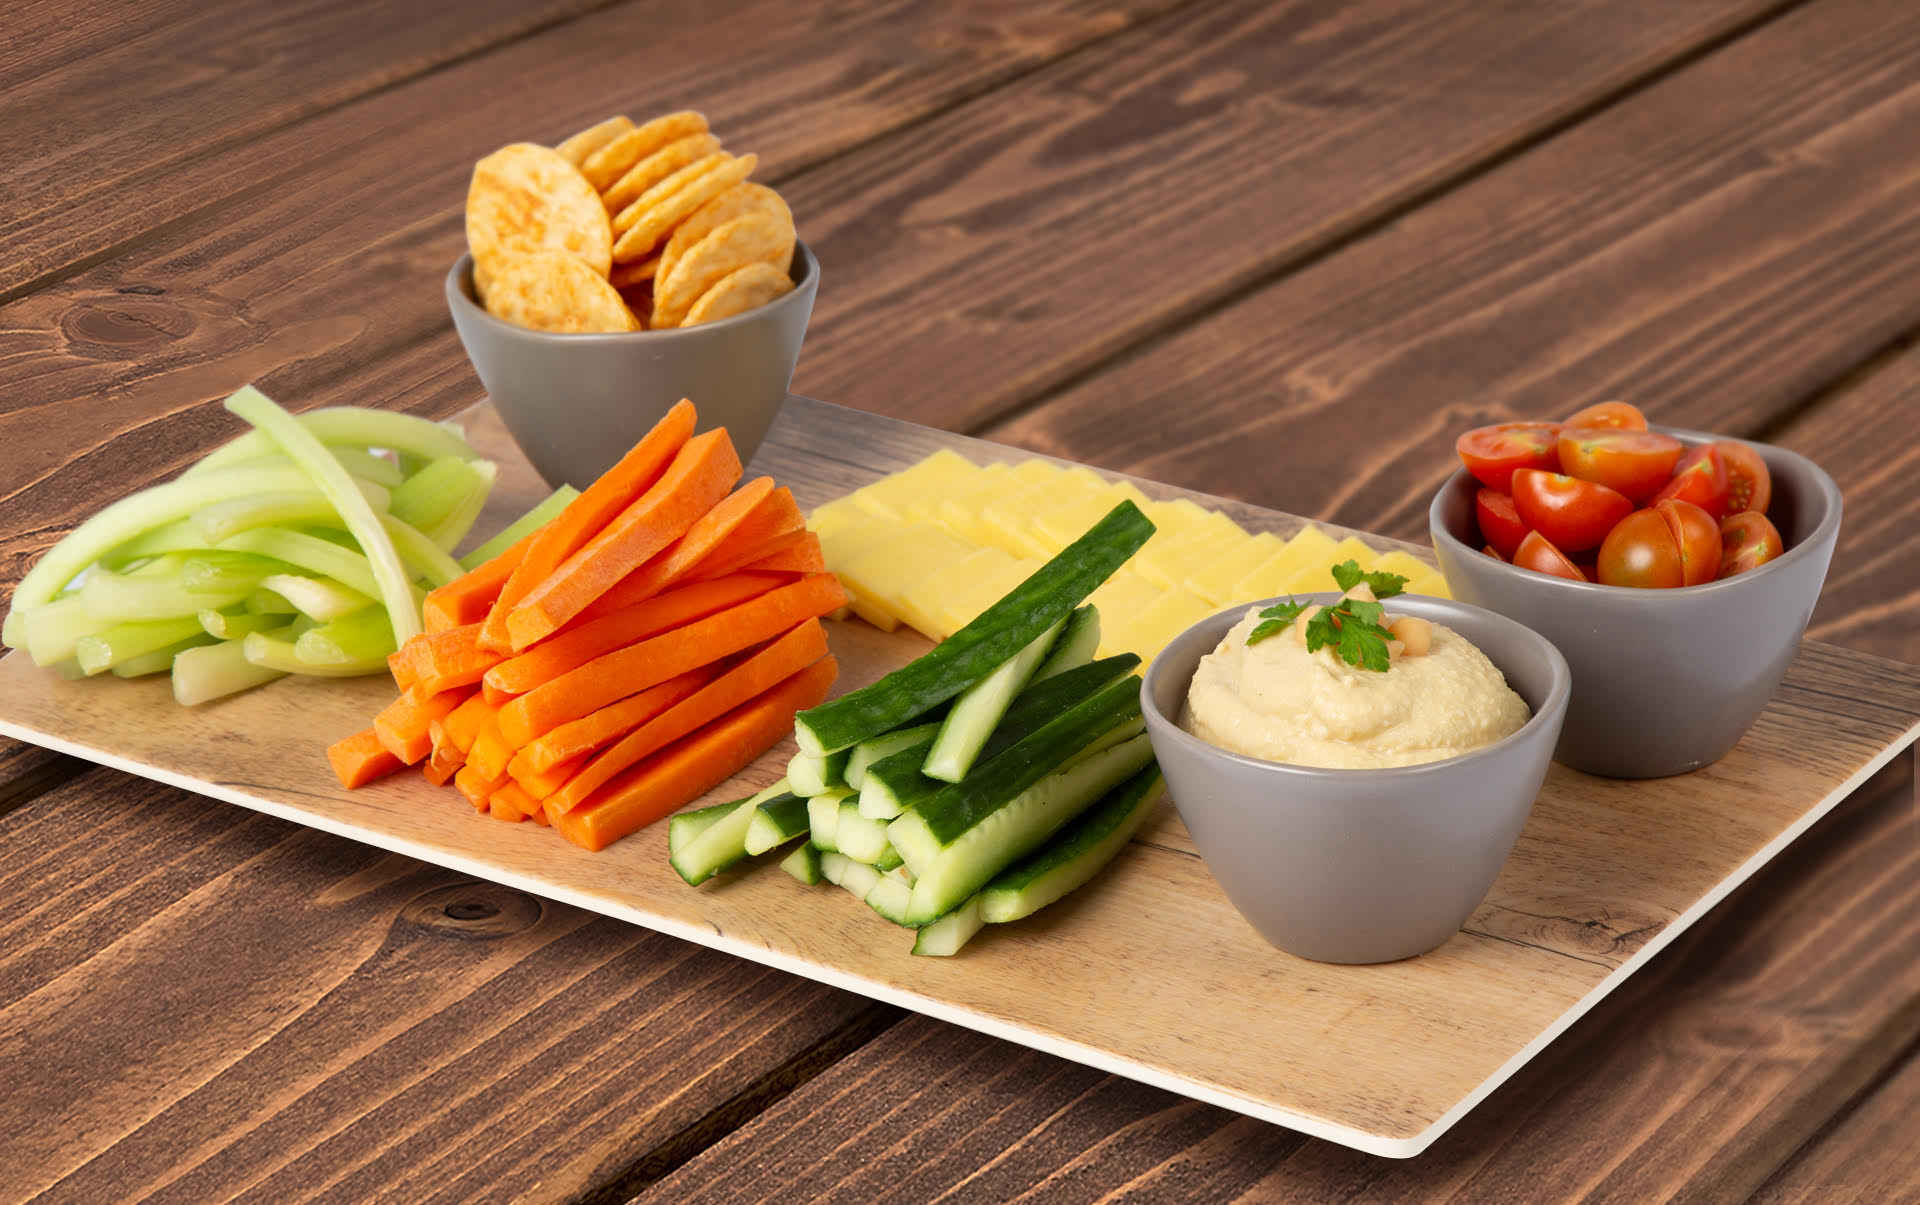 Crispy veggie, cheese and hummus dip platter